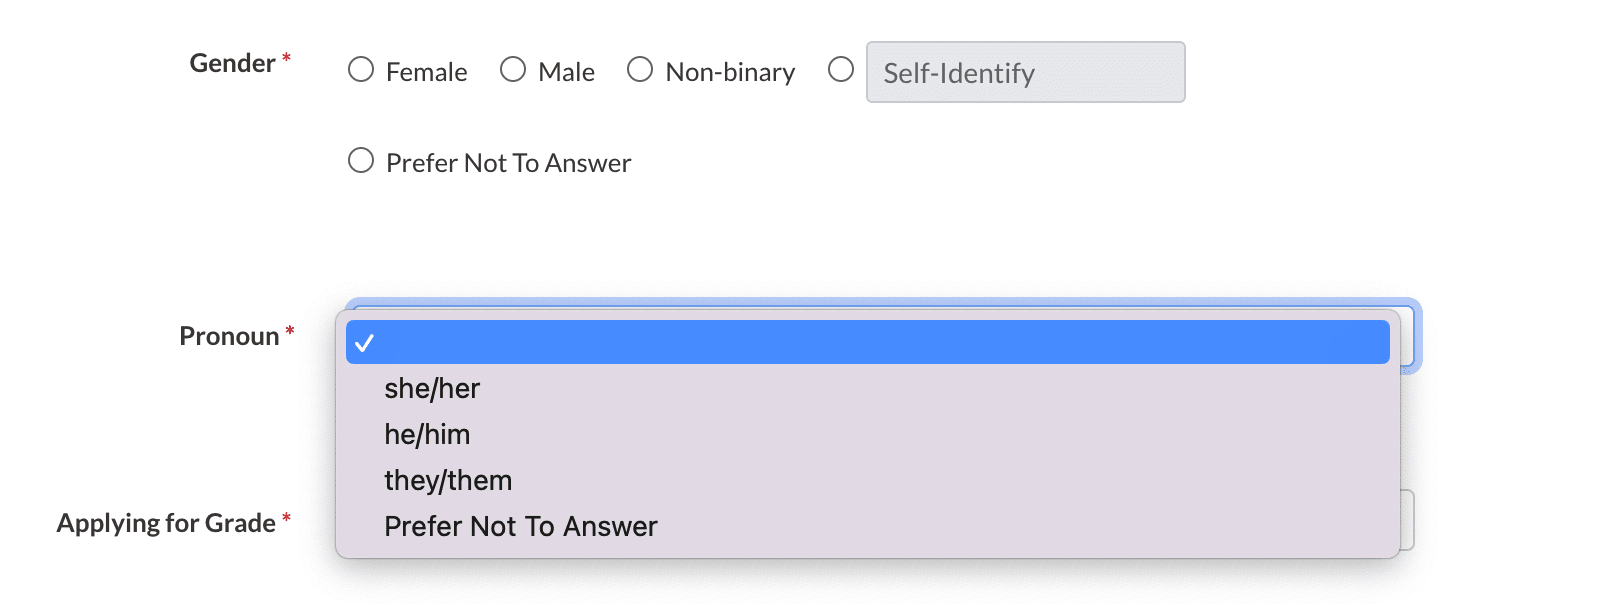 Gender Options on a form